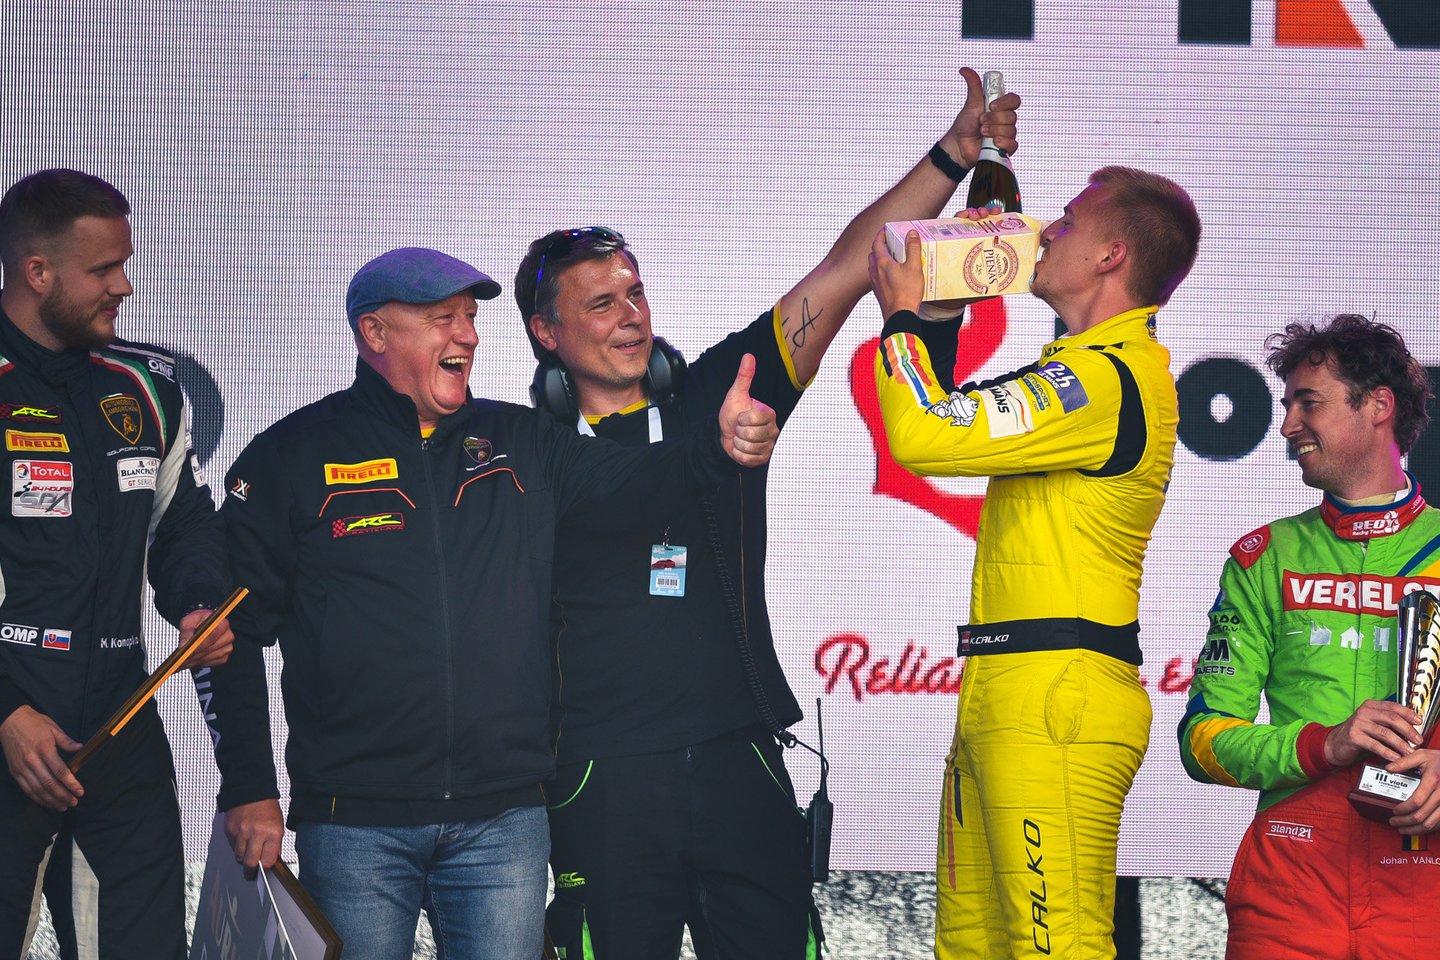  1006 km lenktynių kvalifikacijos nugalėtojų apdovanojimai.<br> Vytauto Pilkausko nuotr.